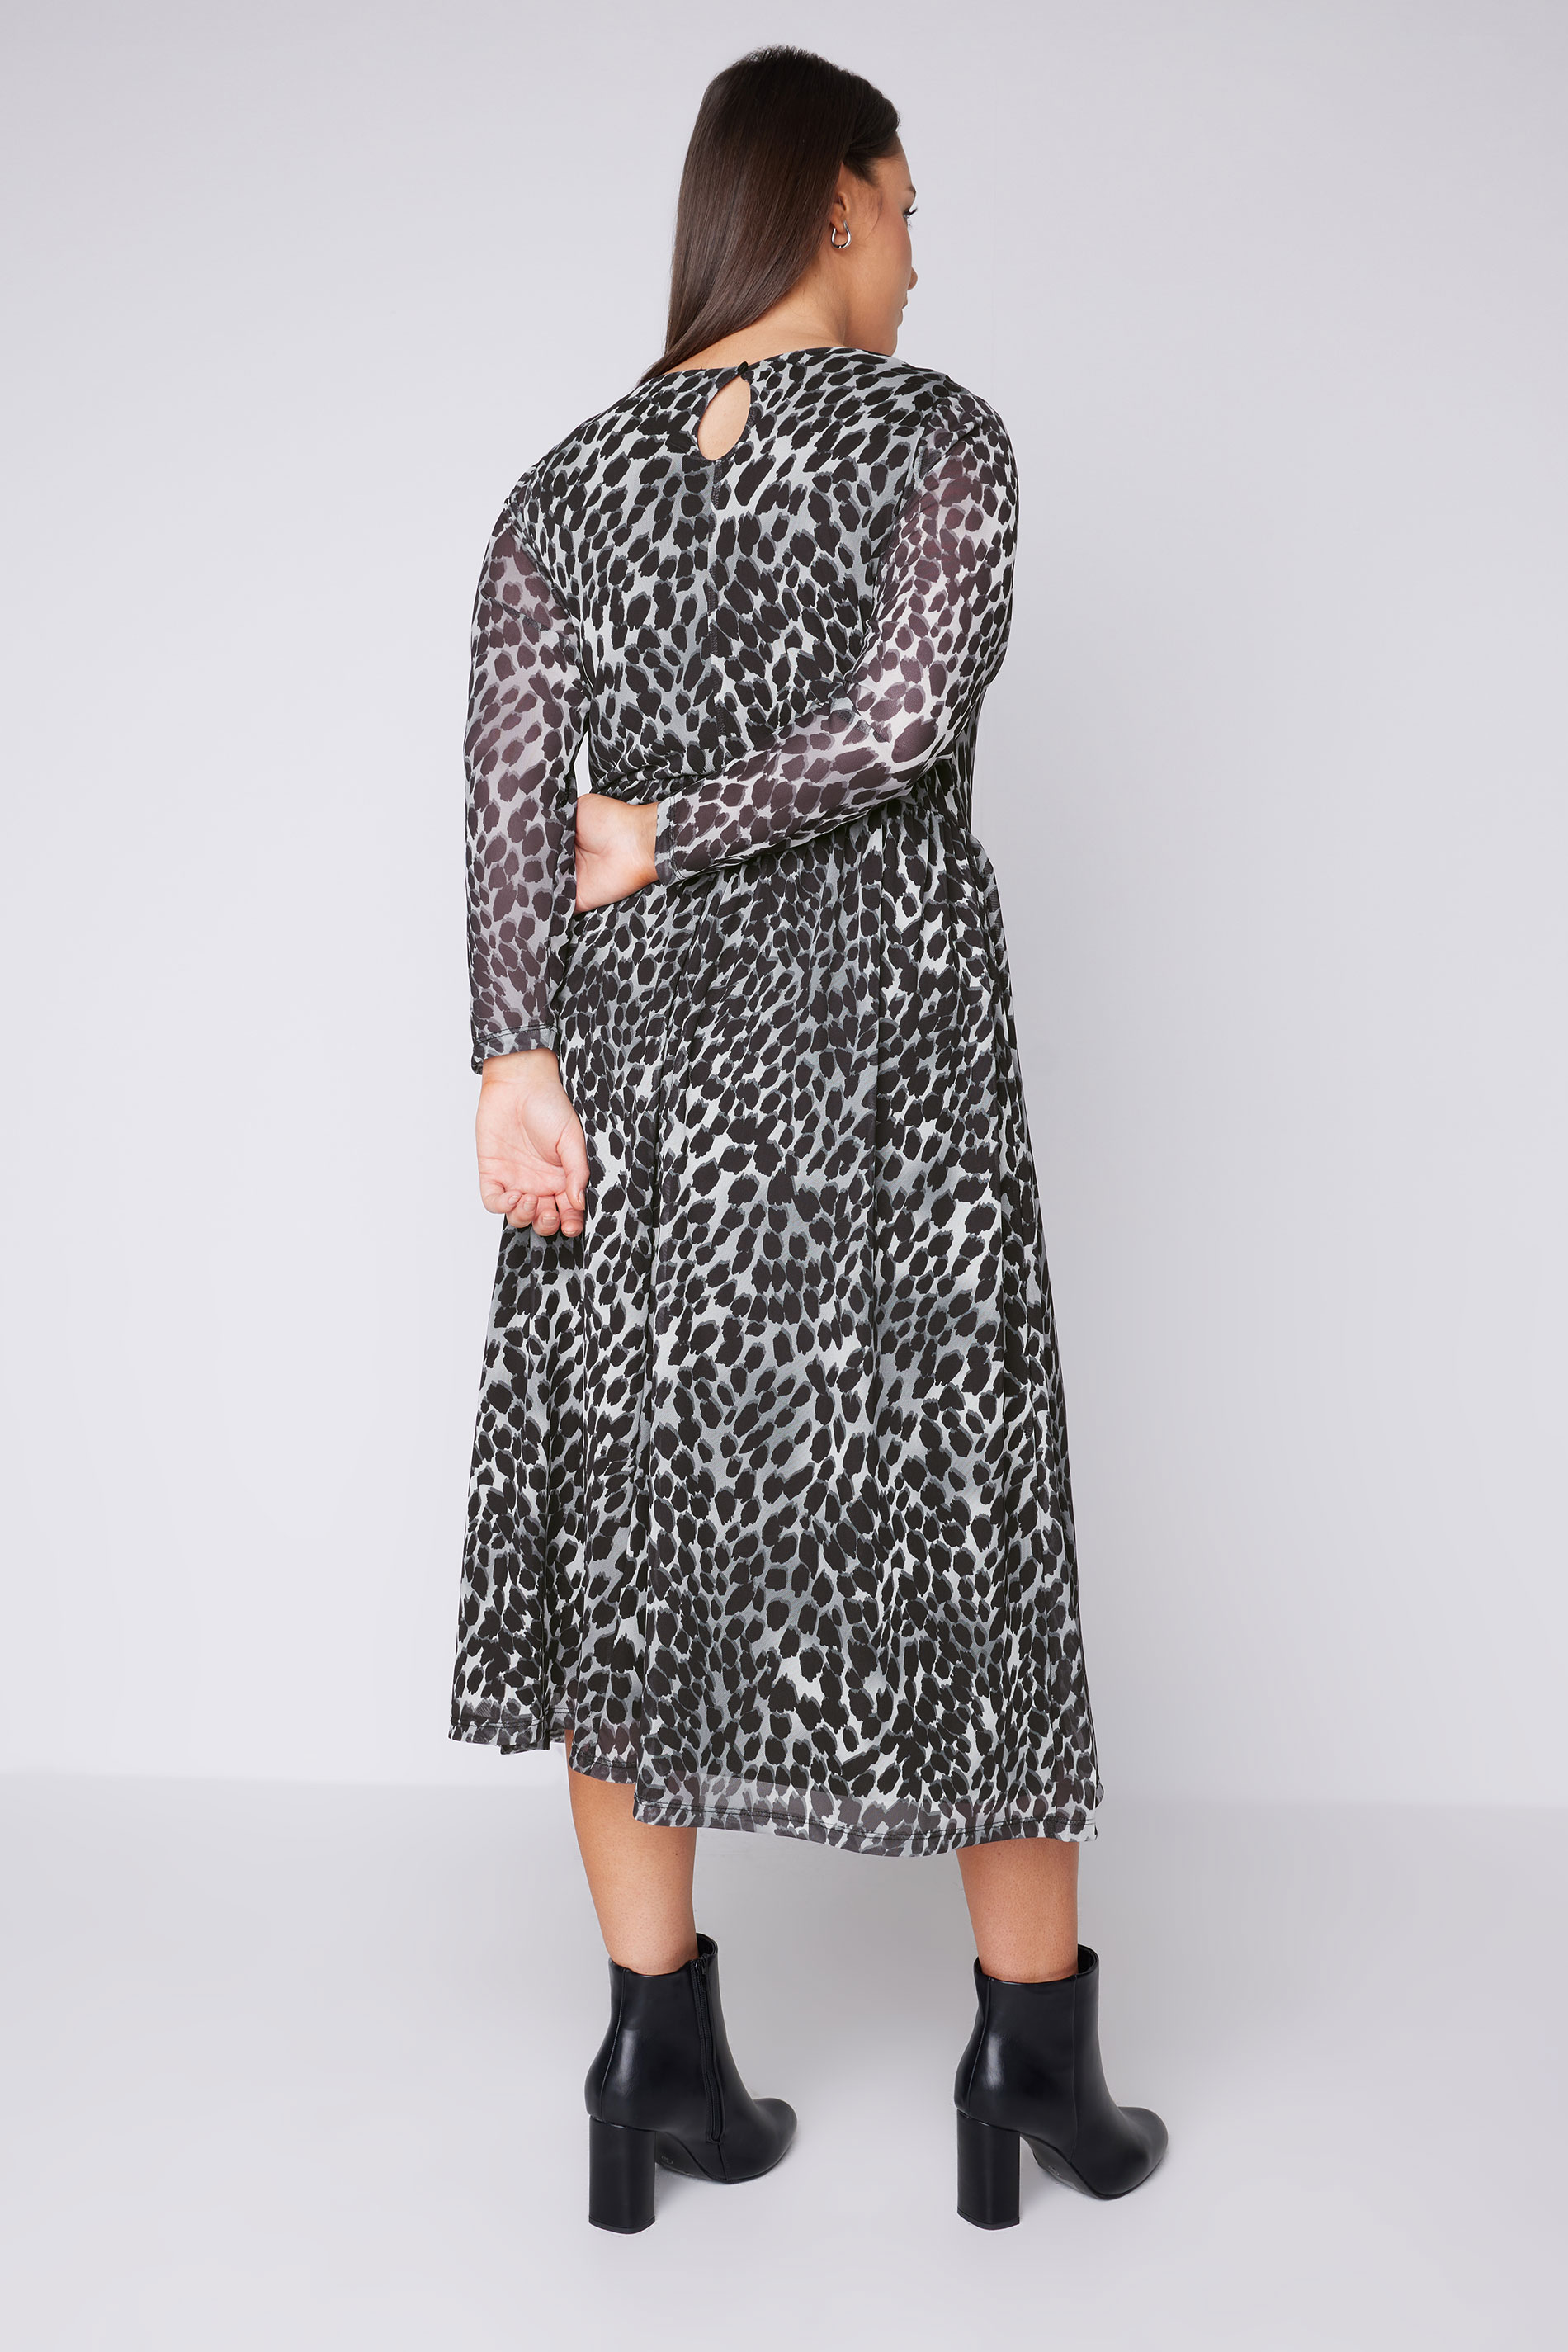 EVANS Plus Size Grey Leopard Print Mesh Midaxi Dress | Evans  3